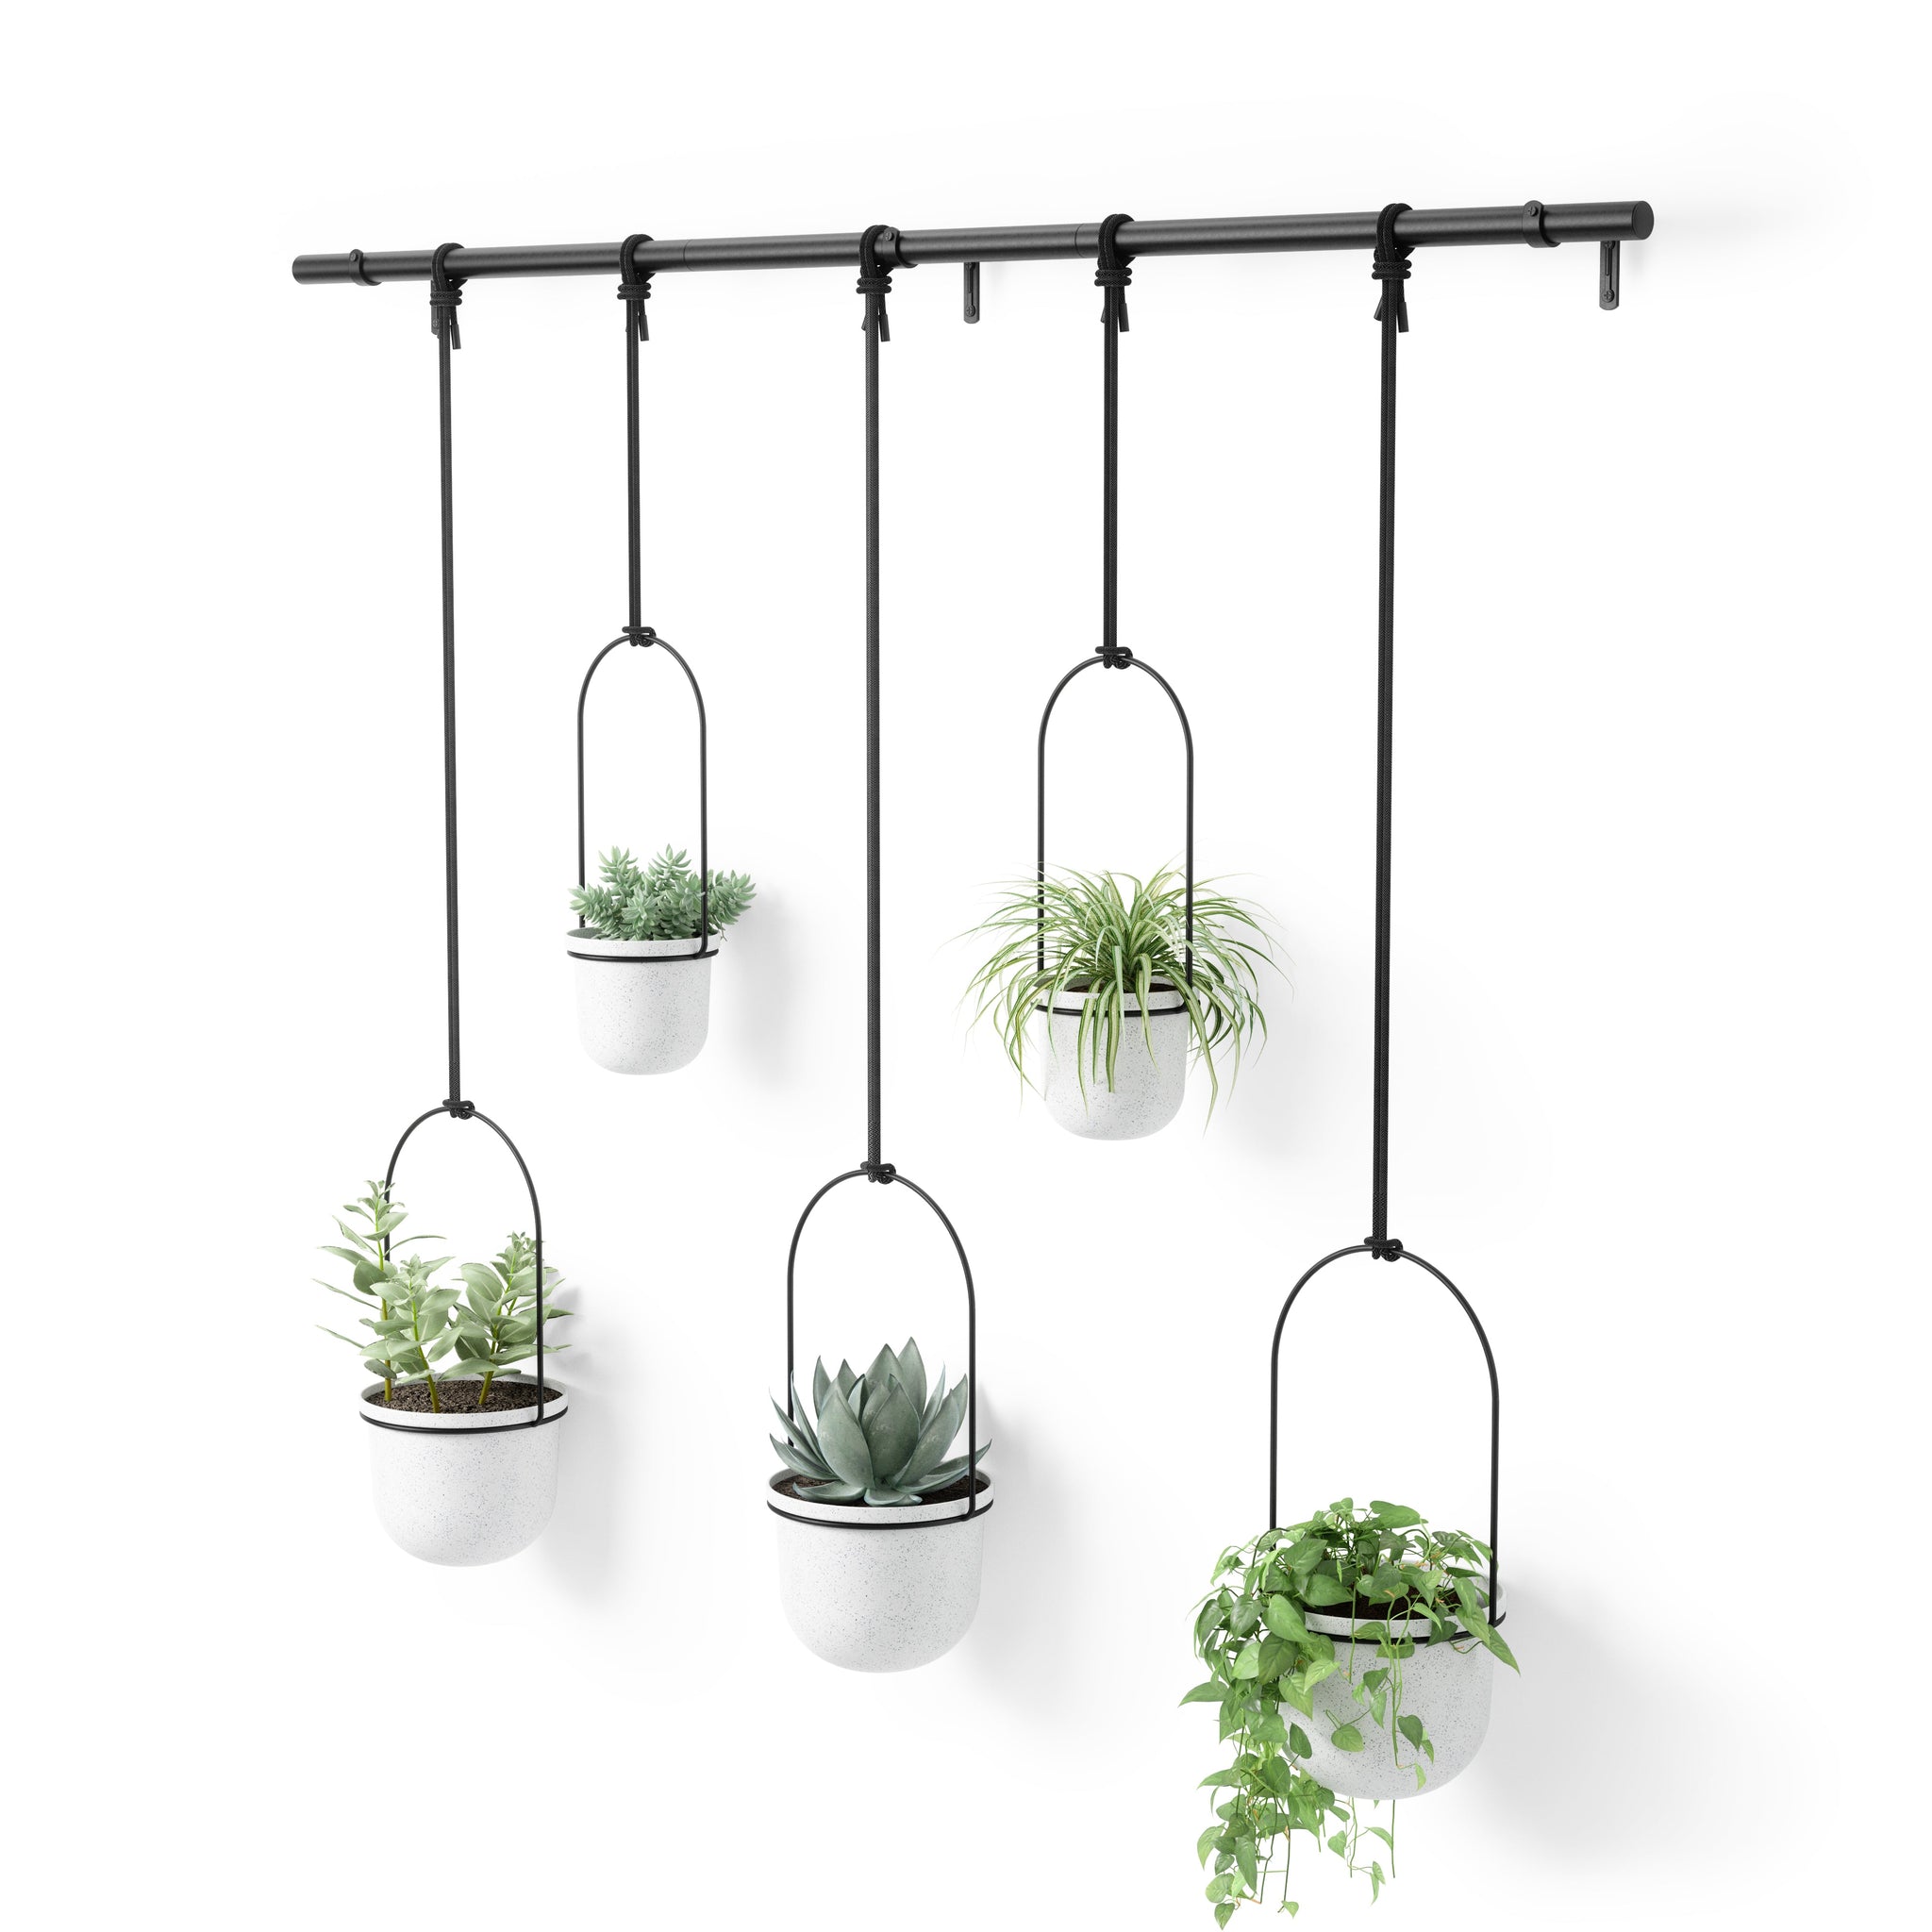 Triflora Hanging Planter (Set of 5)